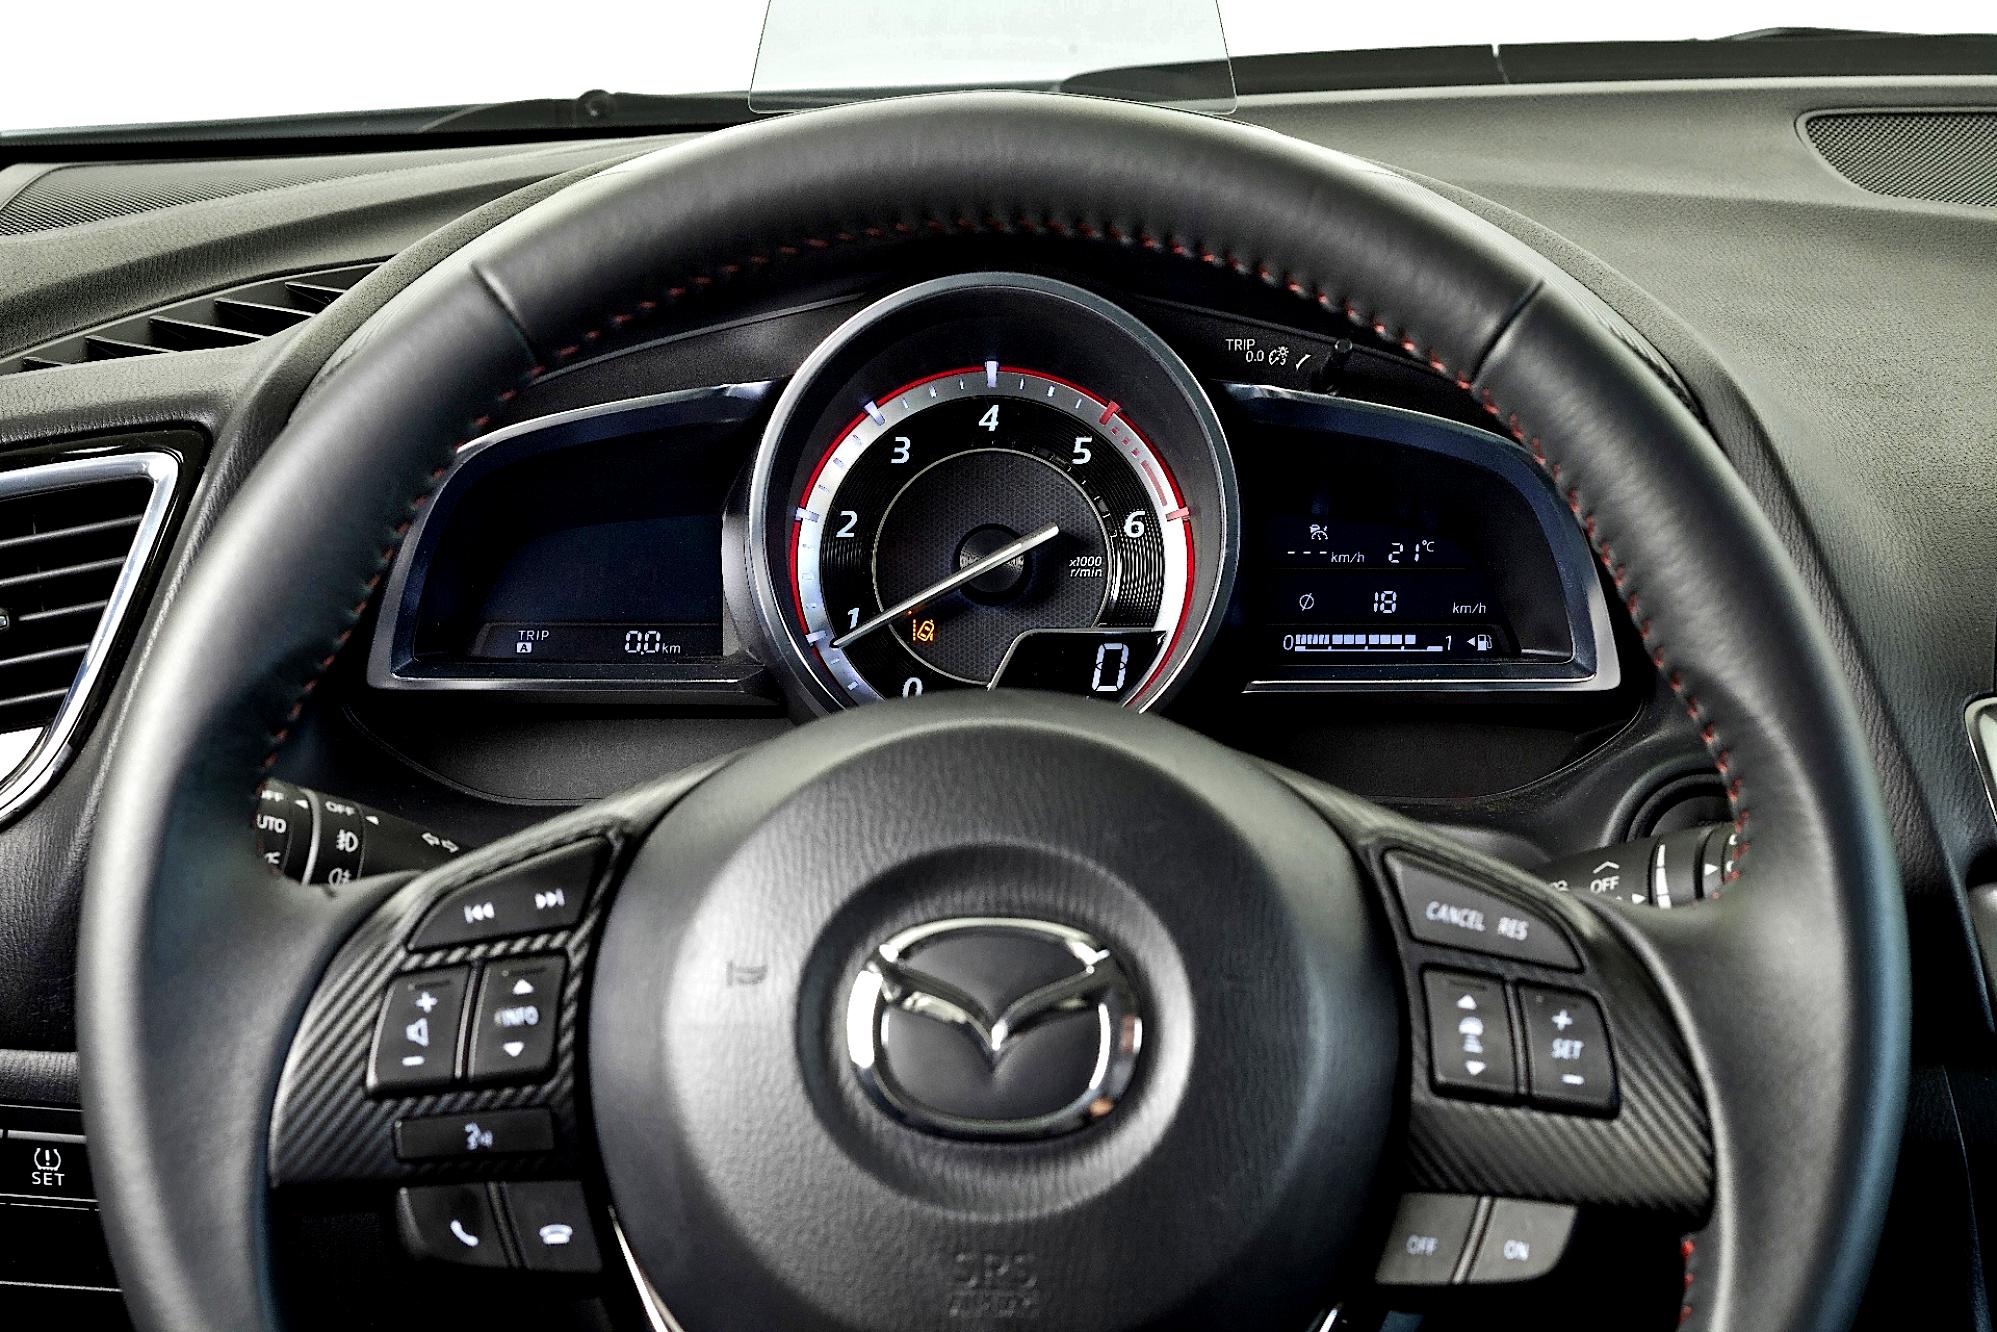 Mazda 3 / Axela Hatchback 2013 #65